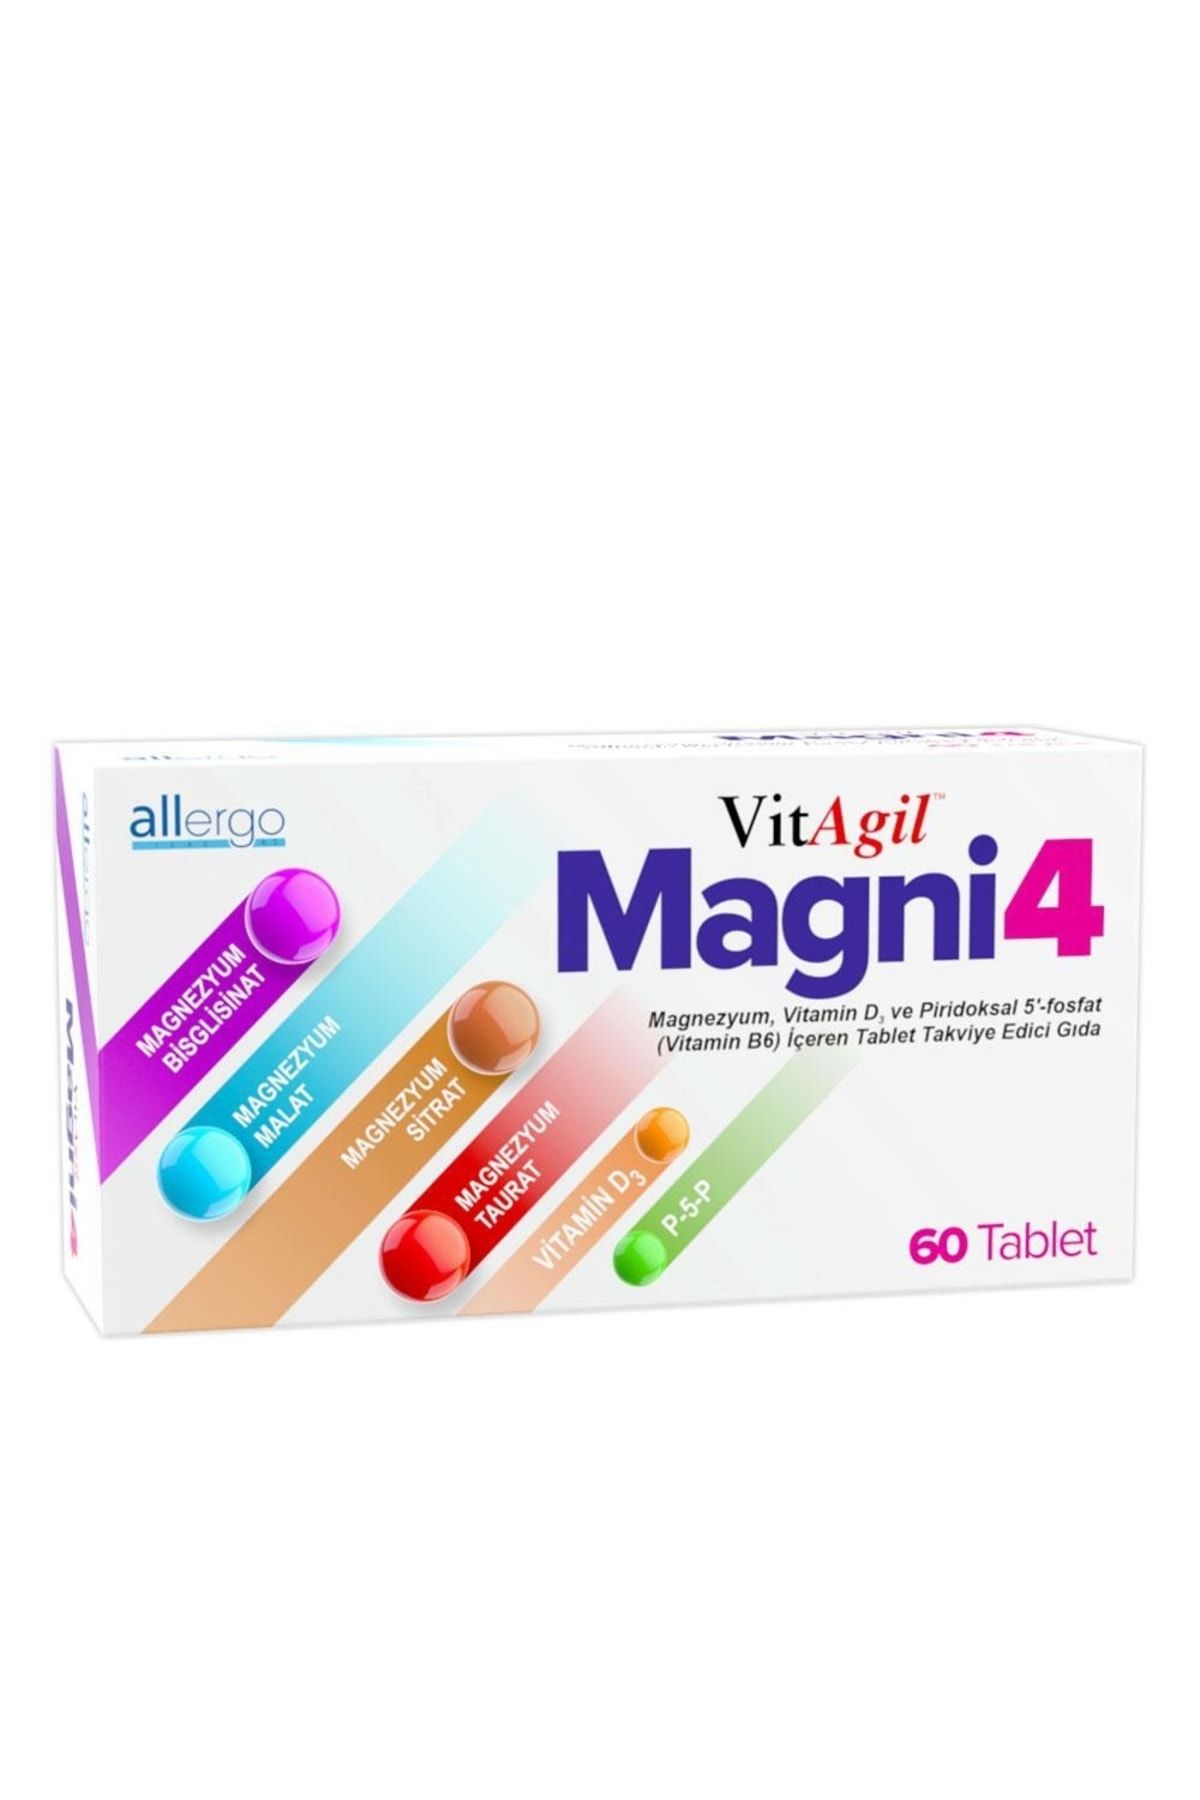 Allergo Vitagil Magni4 Magnezyum Vitamin D3 P5p 60 Tablet